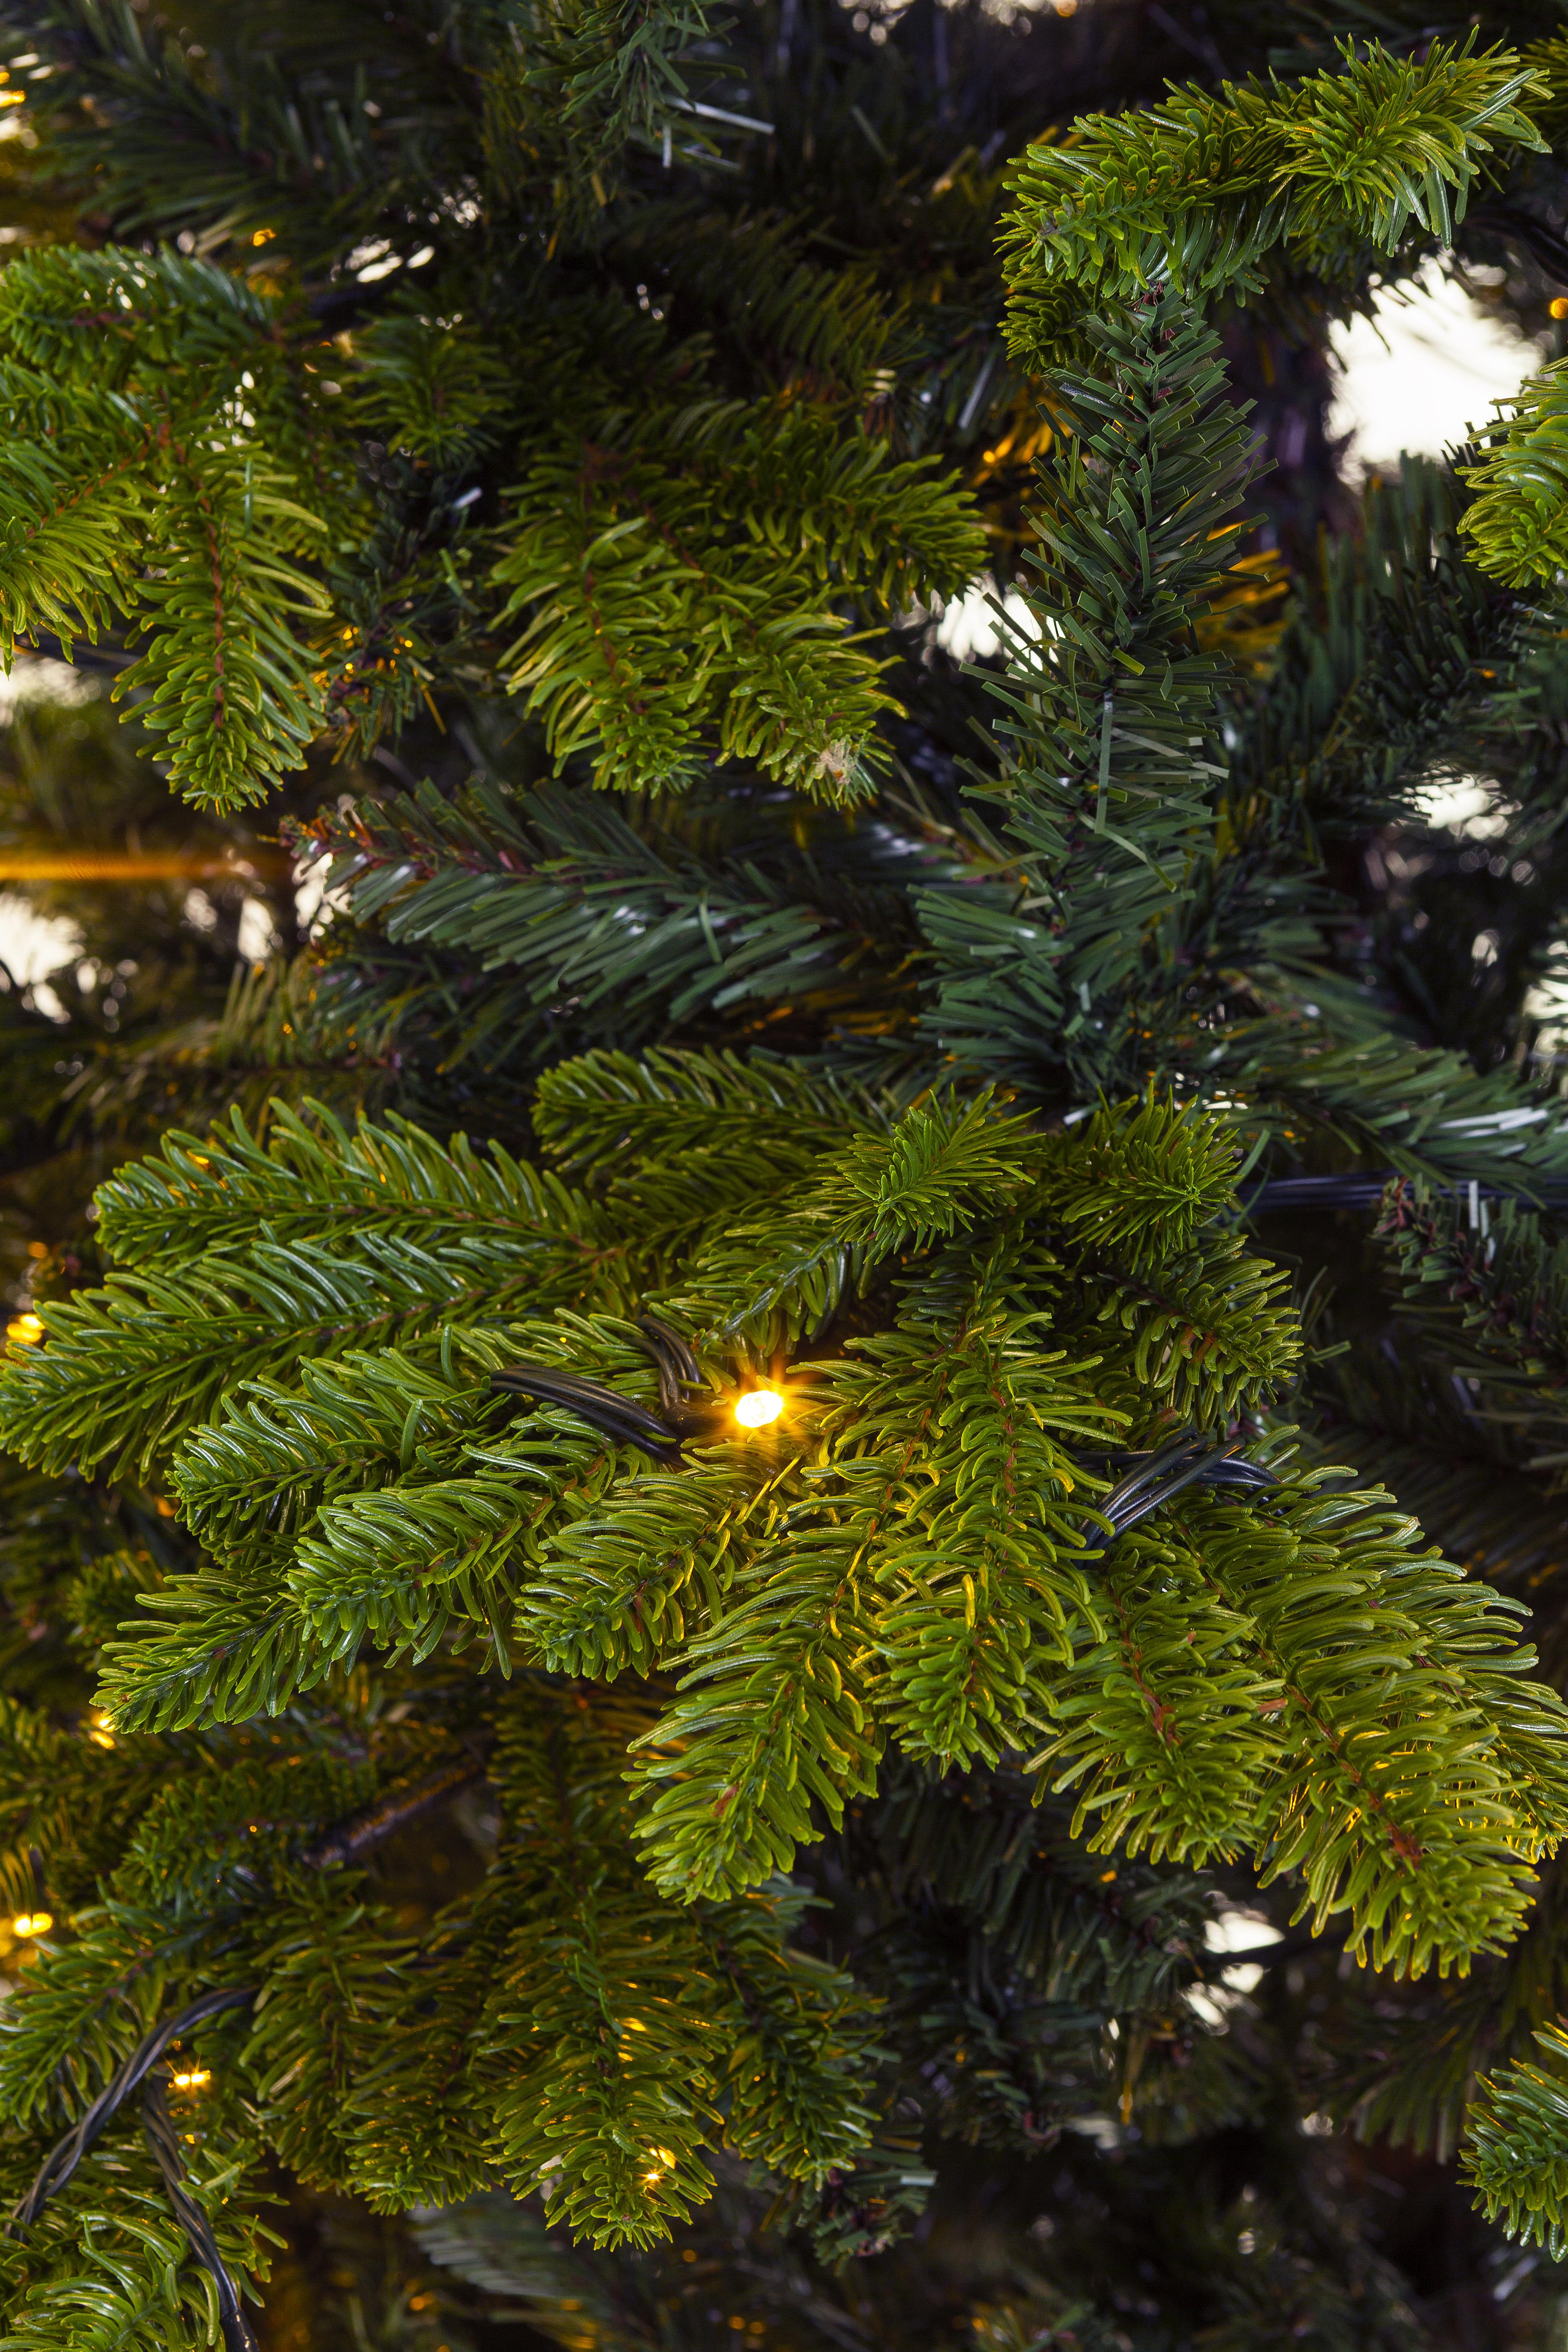 Weihnachtsbaum Excellent Trees® LED Mantorp 180 cm mit Beleuchtung - Luxusversion - 280 Lichter